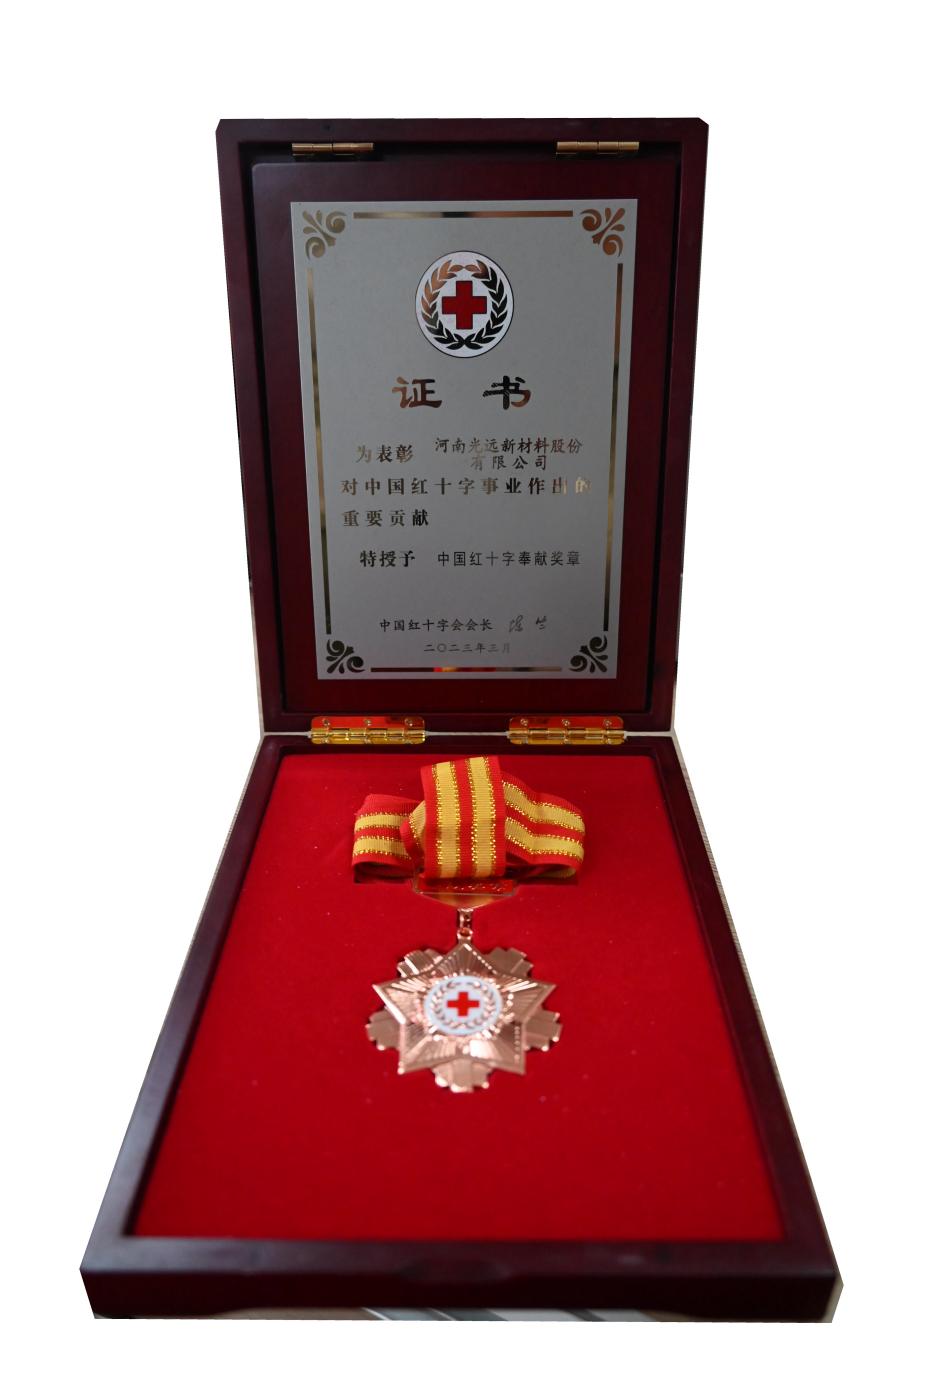 新葡萄新京威尼斯荣获“中国红十字奉献奖章”